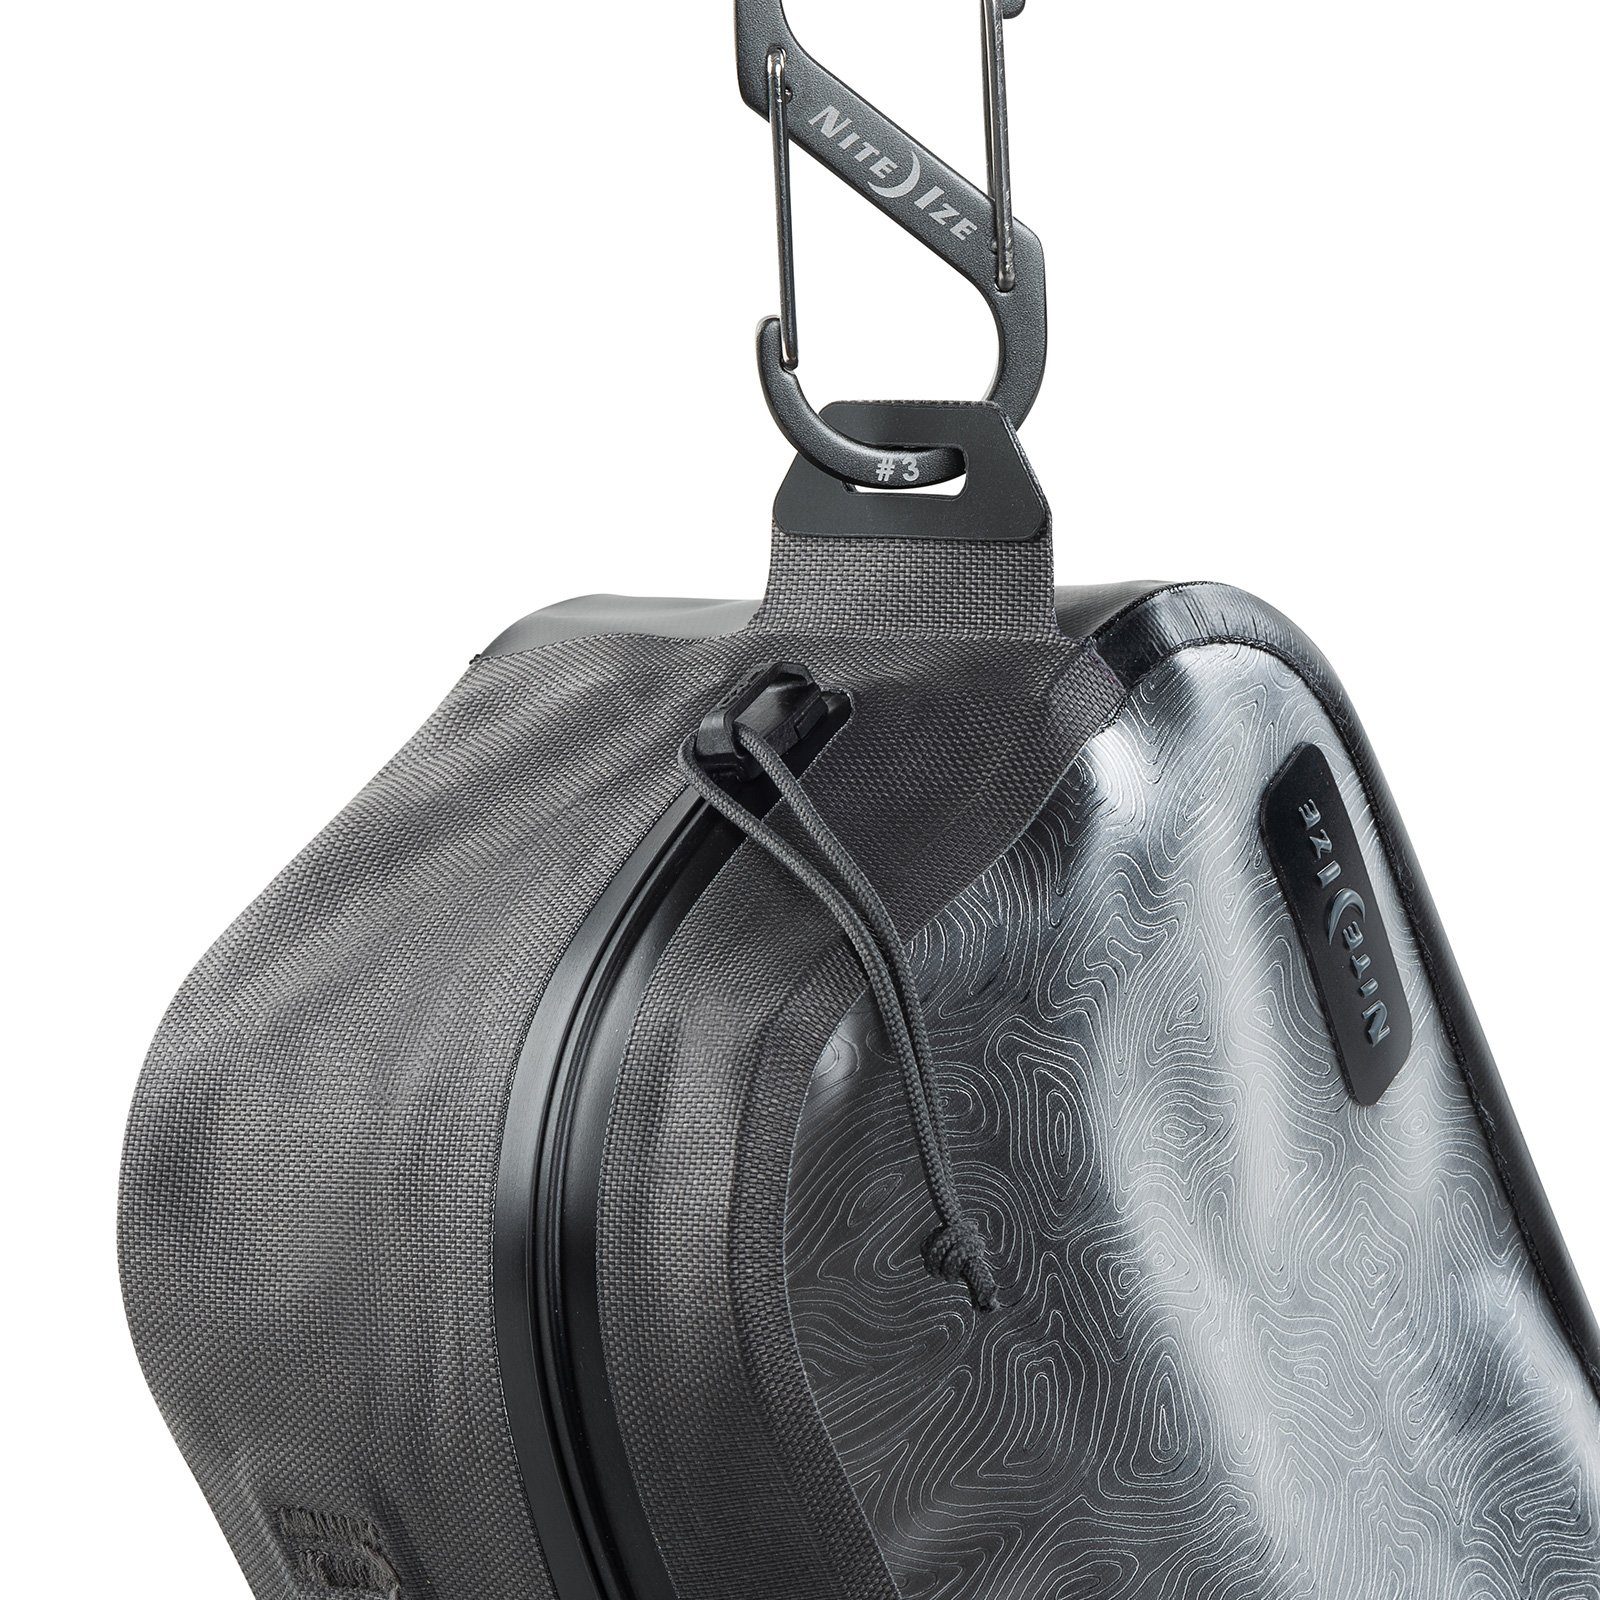 RunOff Packsack Tasche Bag Nite Wasser Wasserdicht IP67 Sport Ize Dry, Pack Camping Beutel